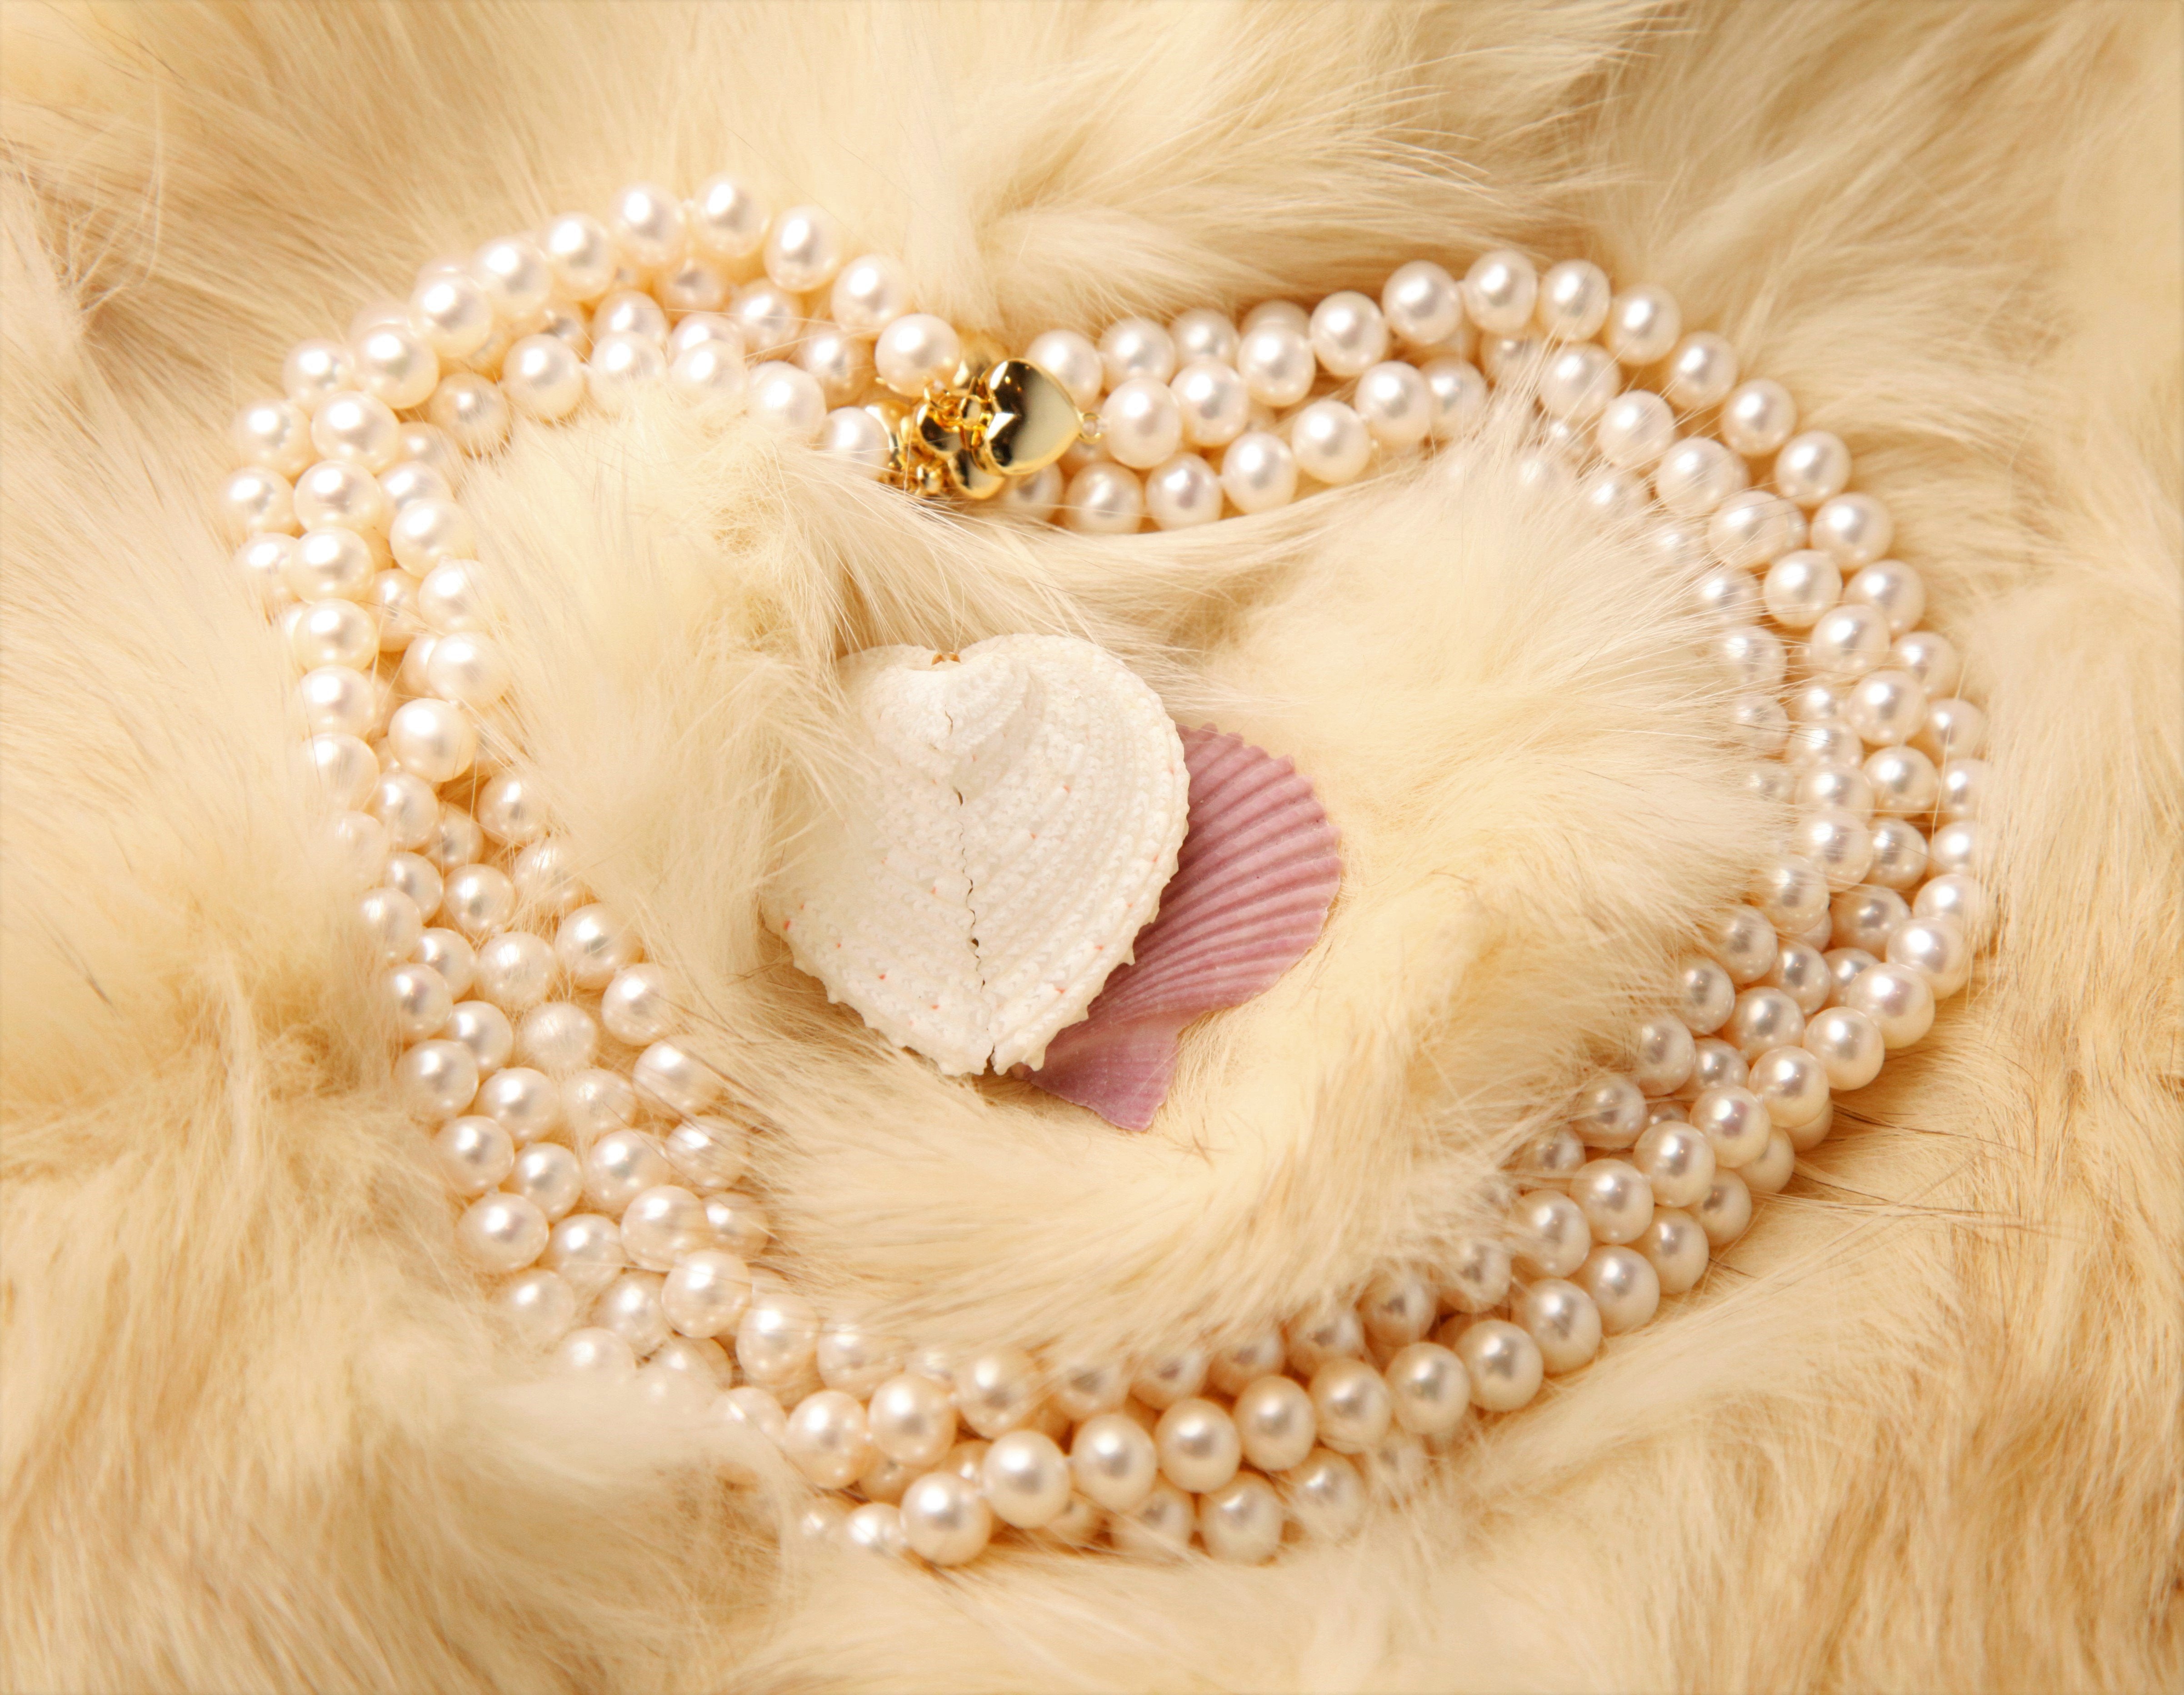 Collier classique de perle et bracelet Set- Blanc